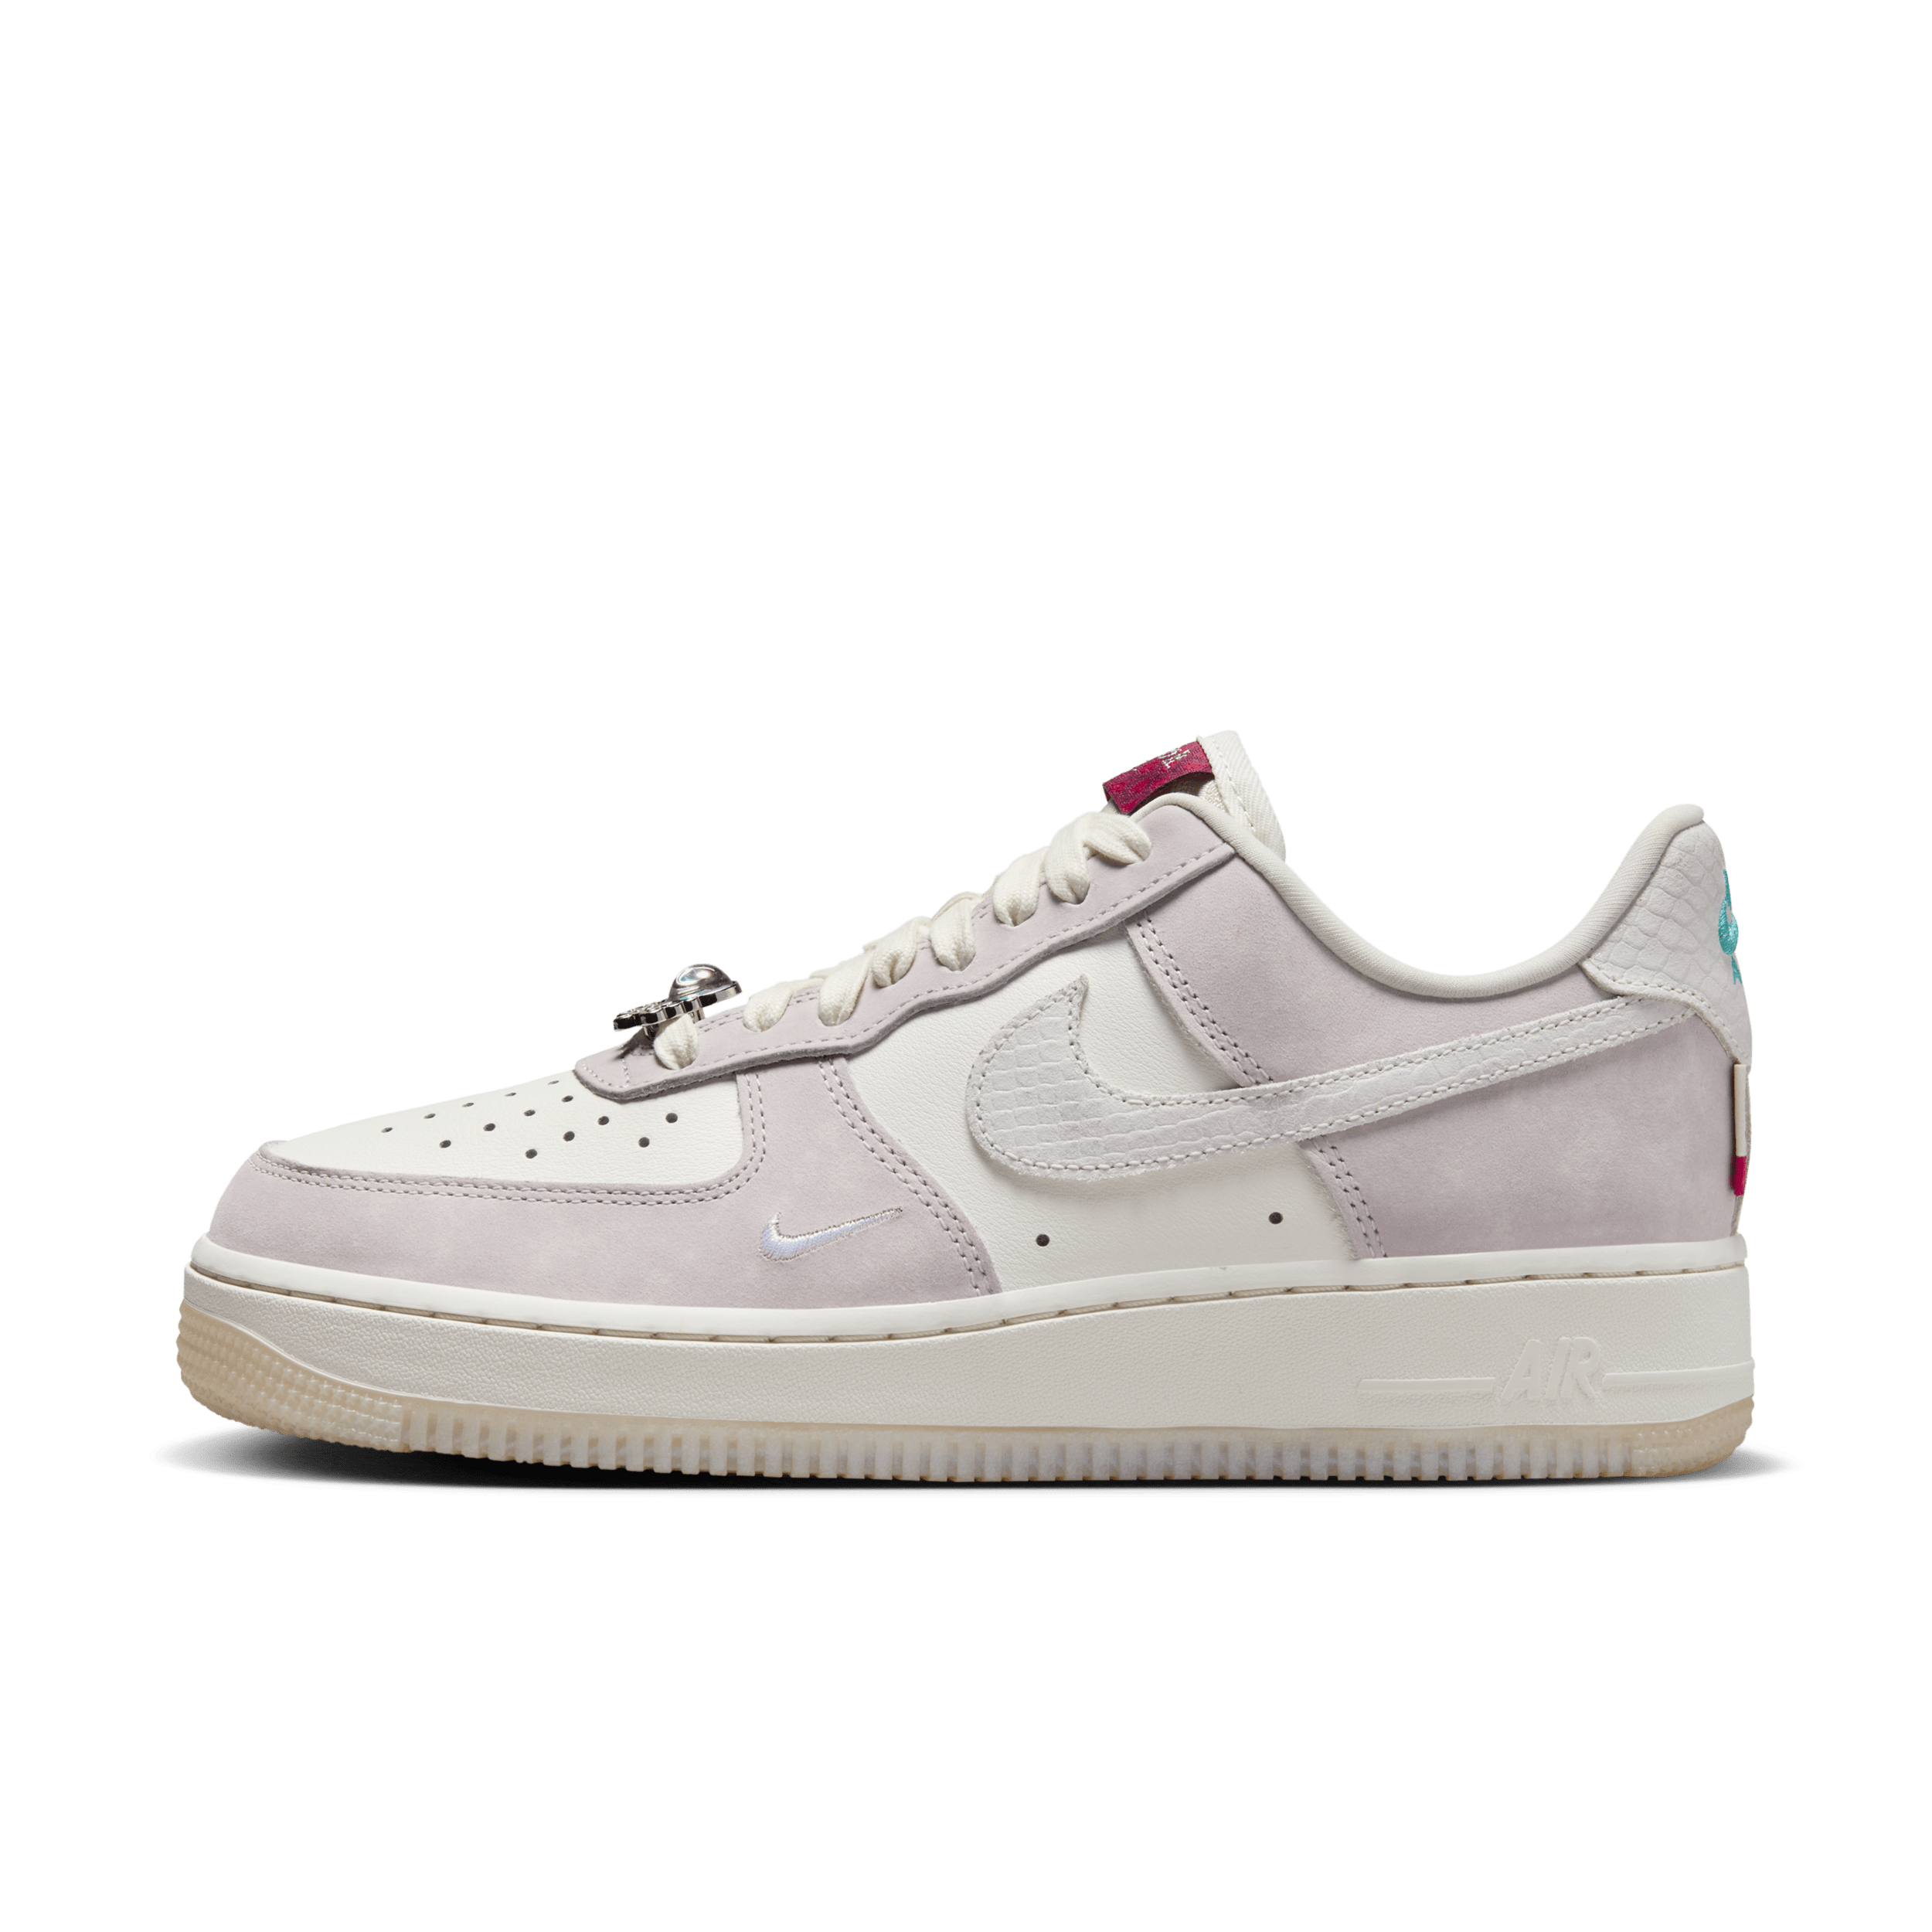 Nike Air Force 1 '07 LX-sko til kvinder - hvid